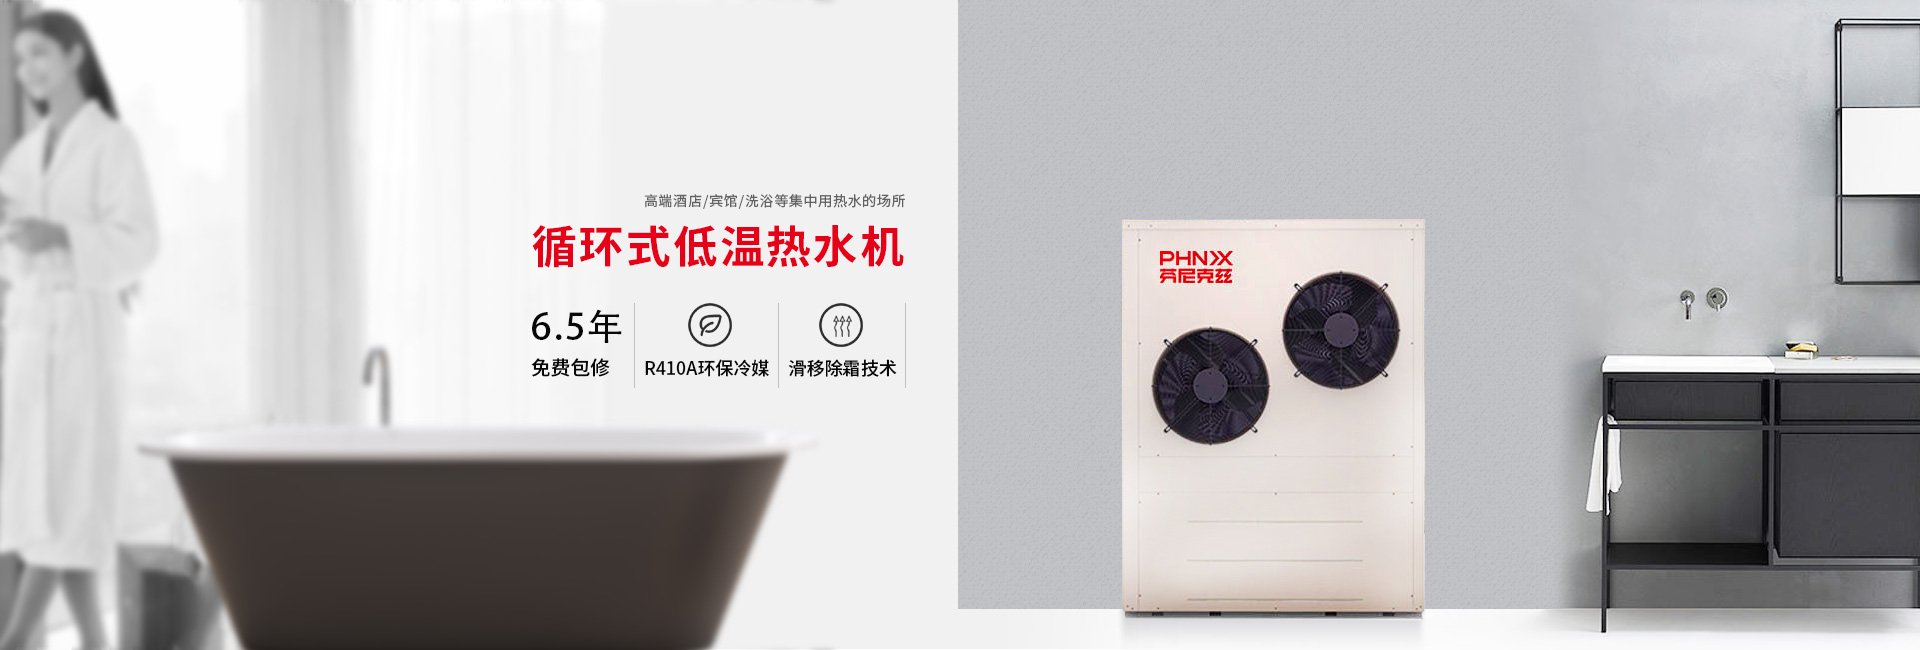 关于当前产品10大信誉菠菜担保平台·(中国)官方网站的成功案例等相关图片